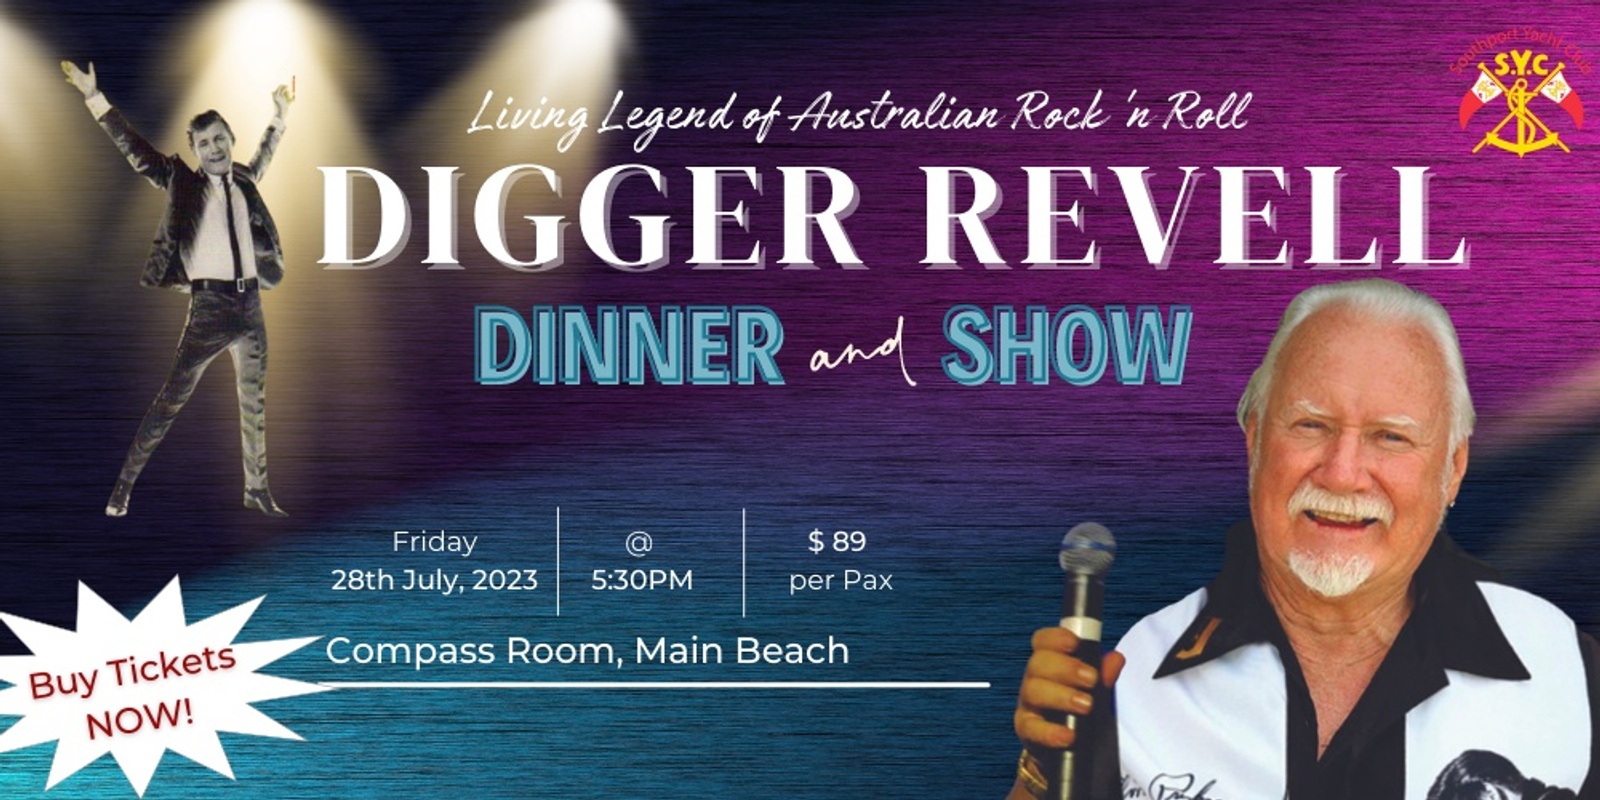 Banner image for Digger Revell Dinner & Show